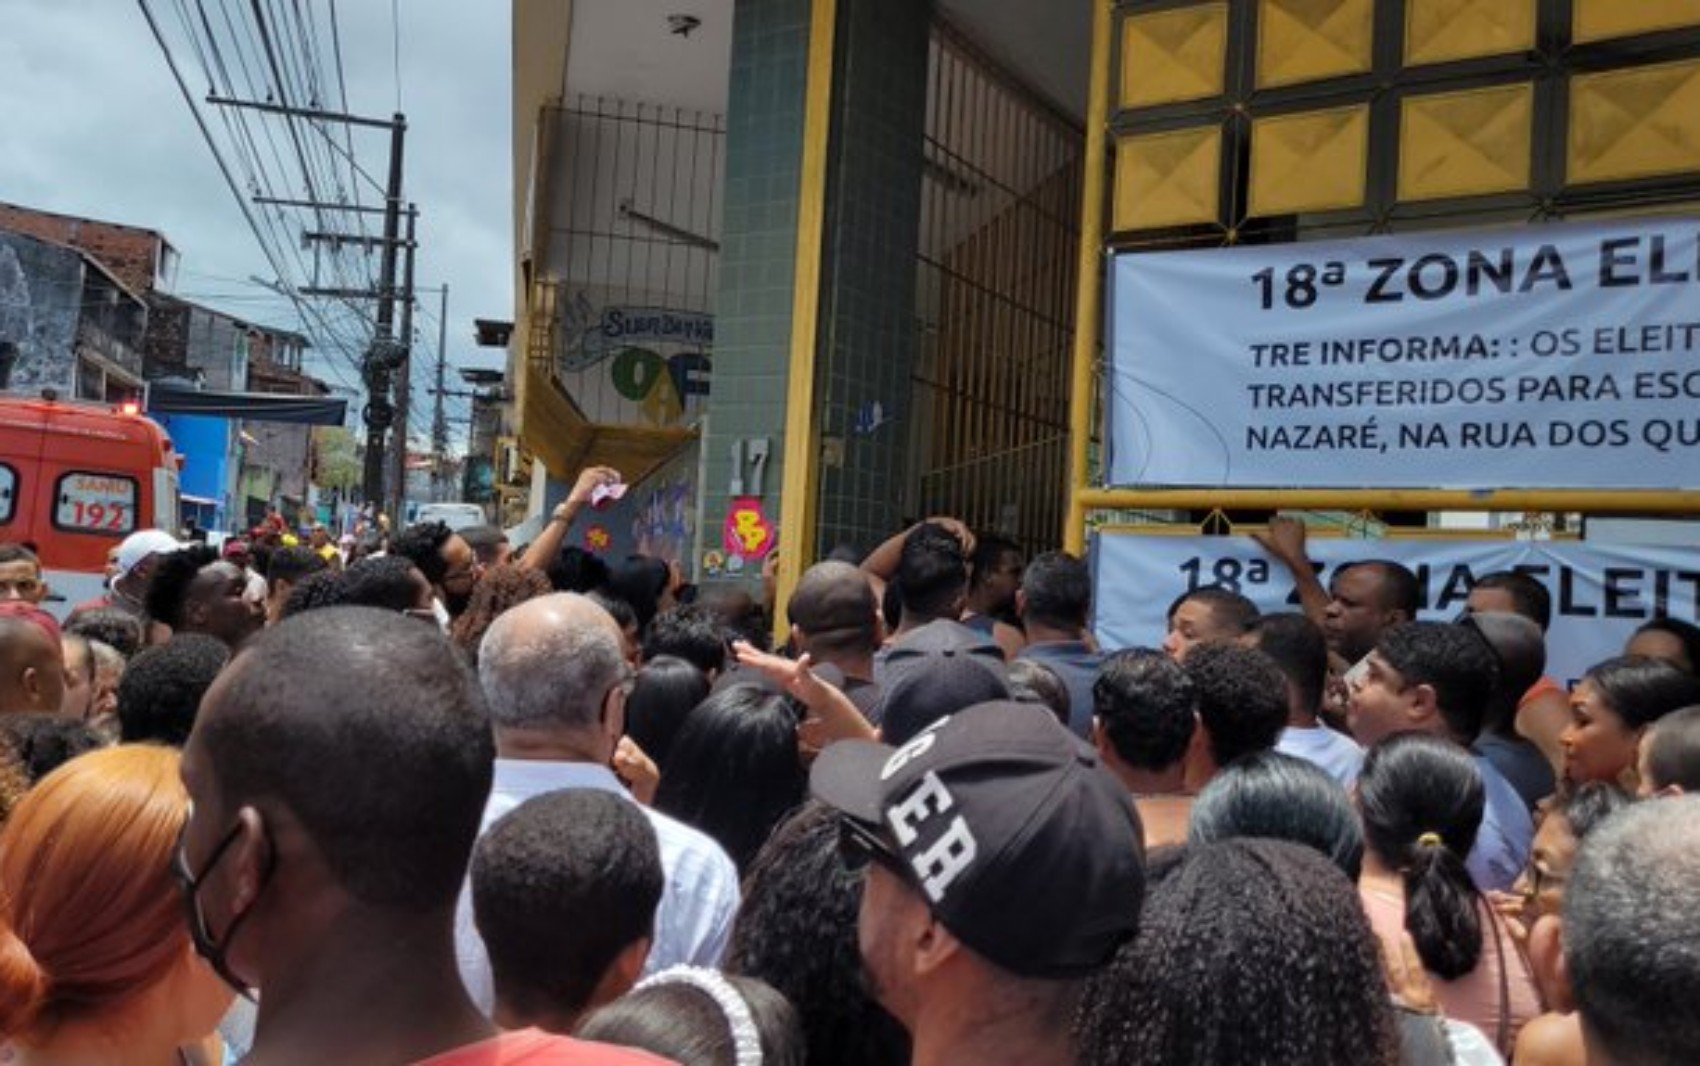 Confusão é registrada em colégio eleitoral de Salvador após mudança de seções de outra escola para o local